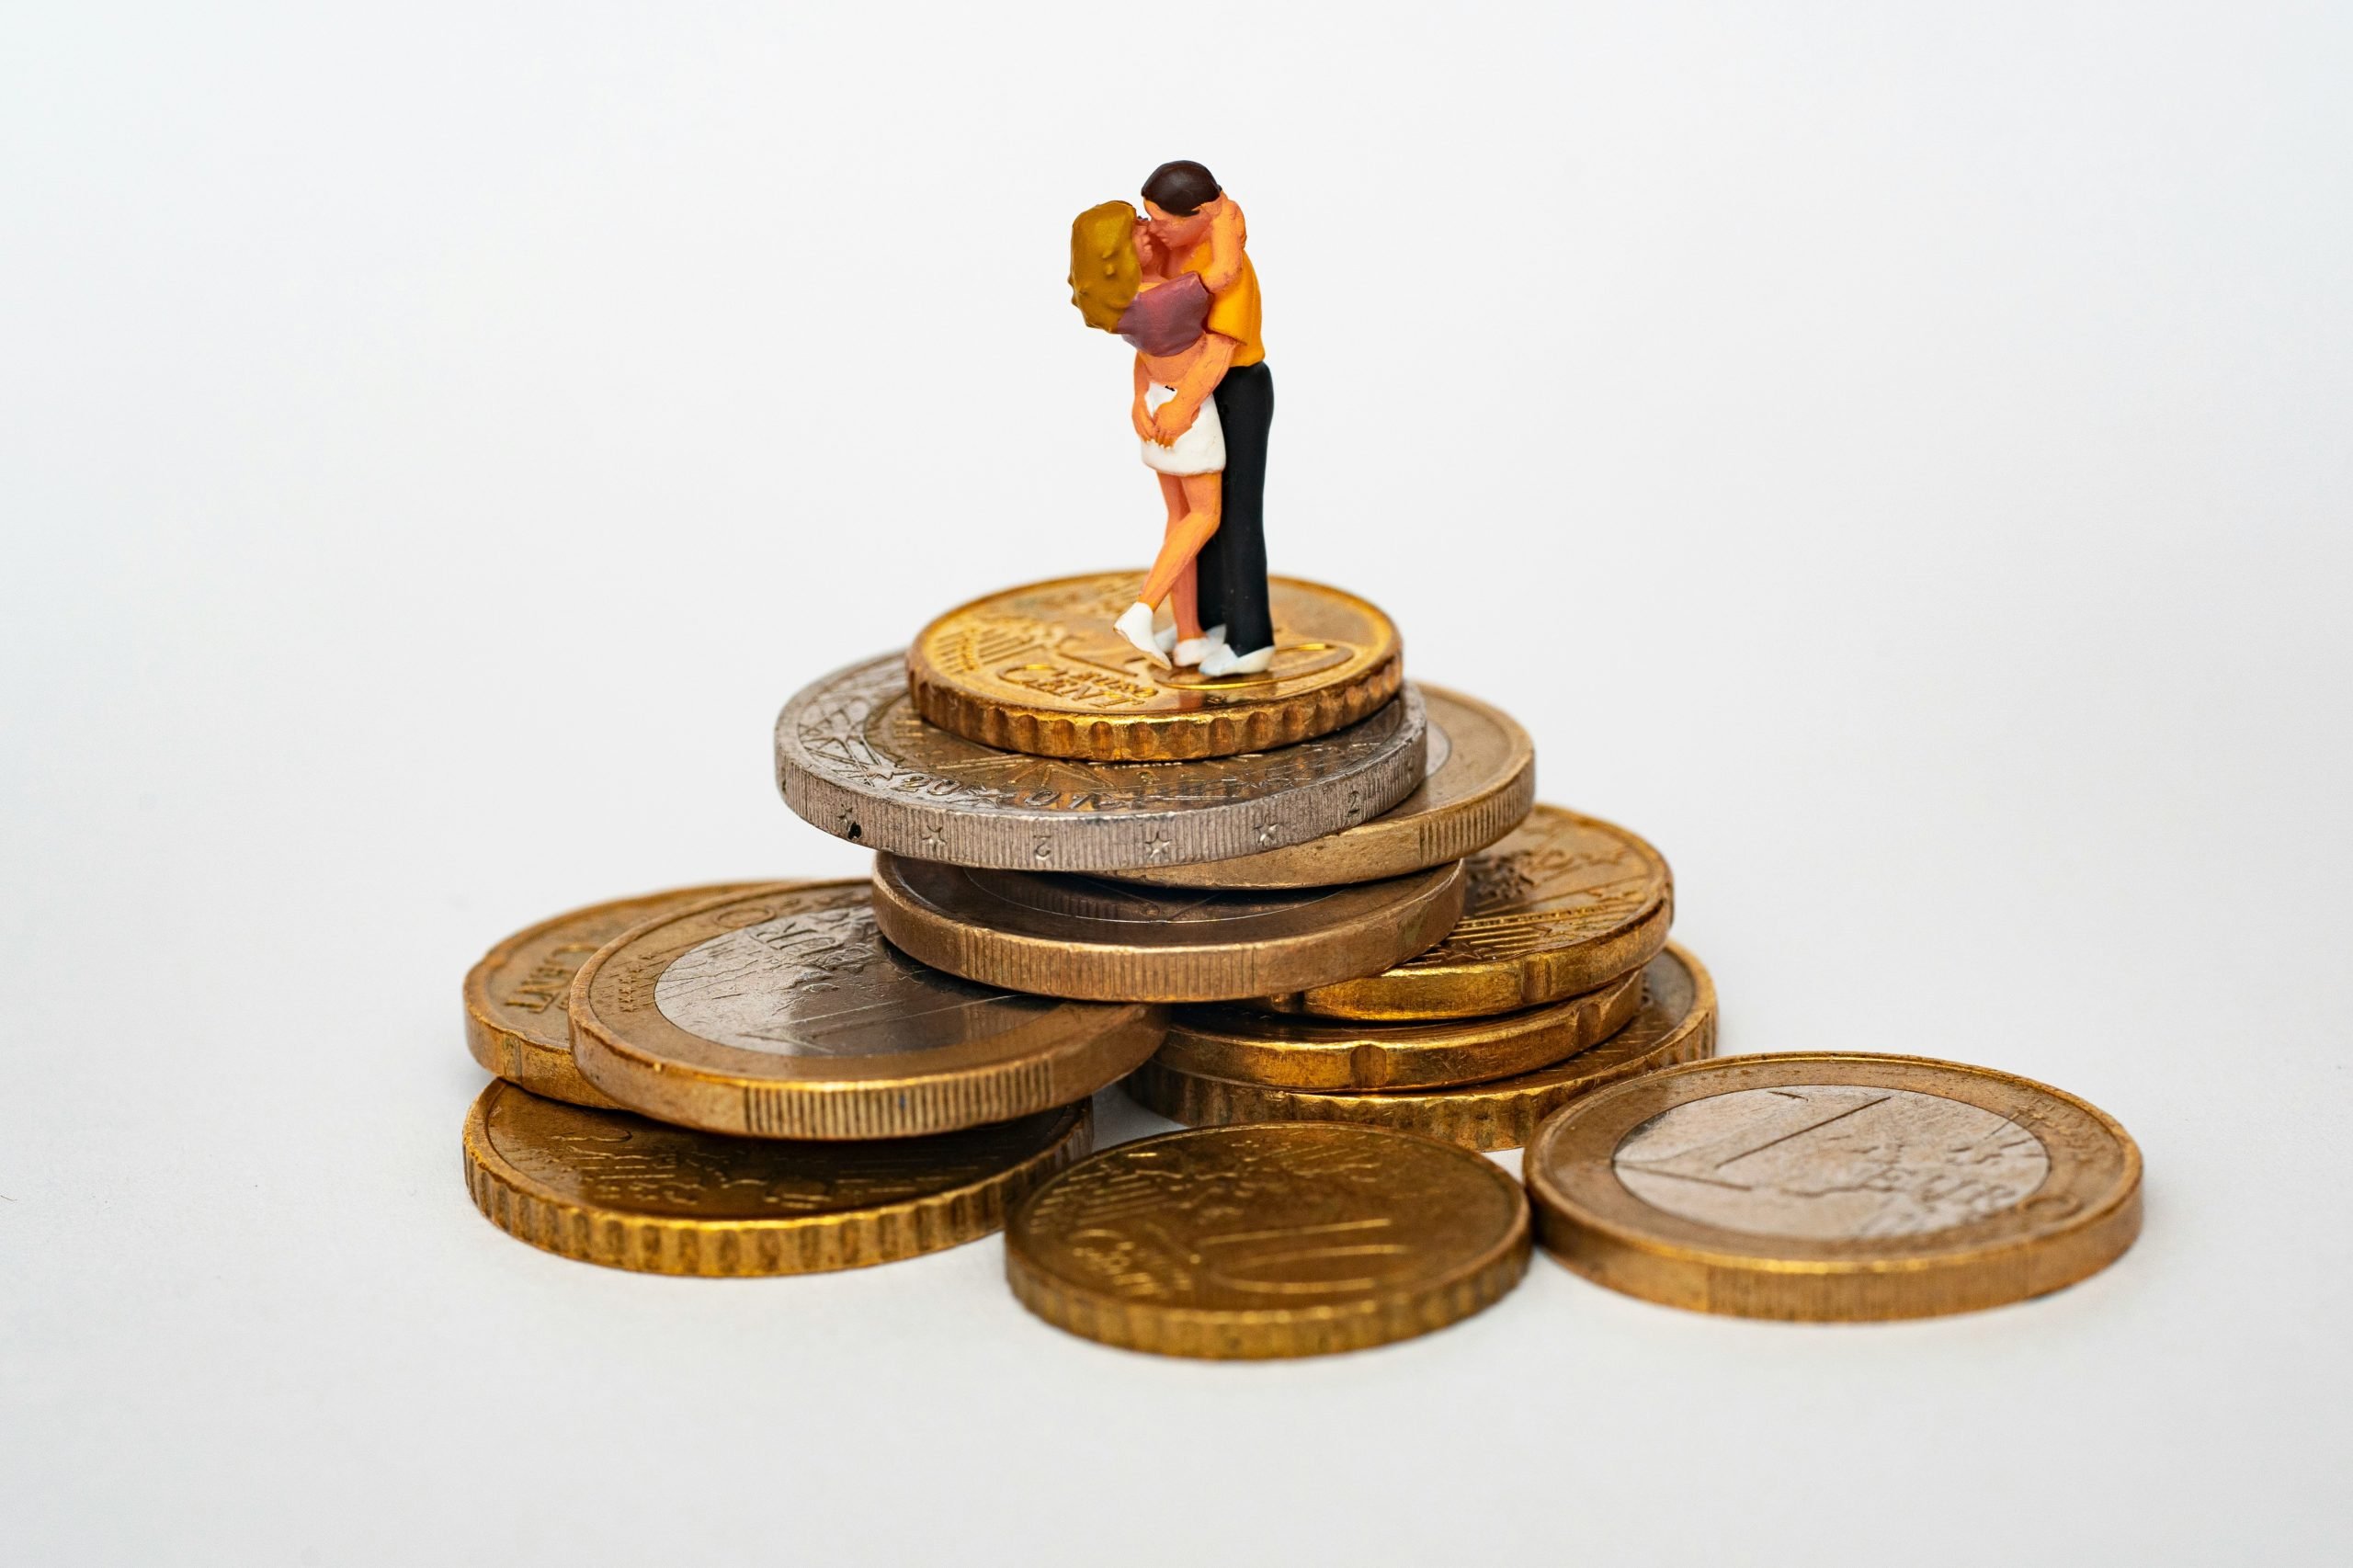 Organizar finanzas en pareja